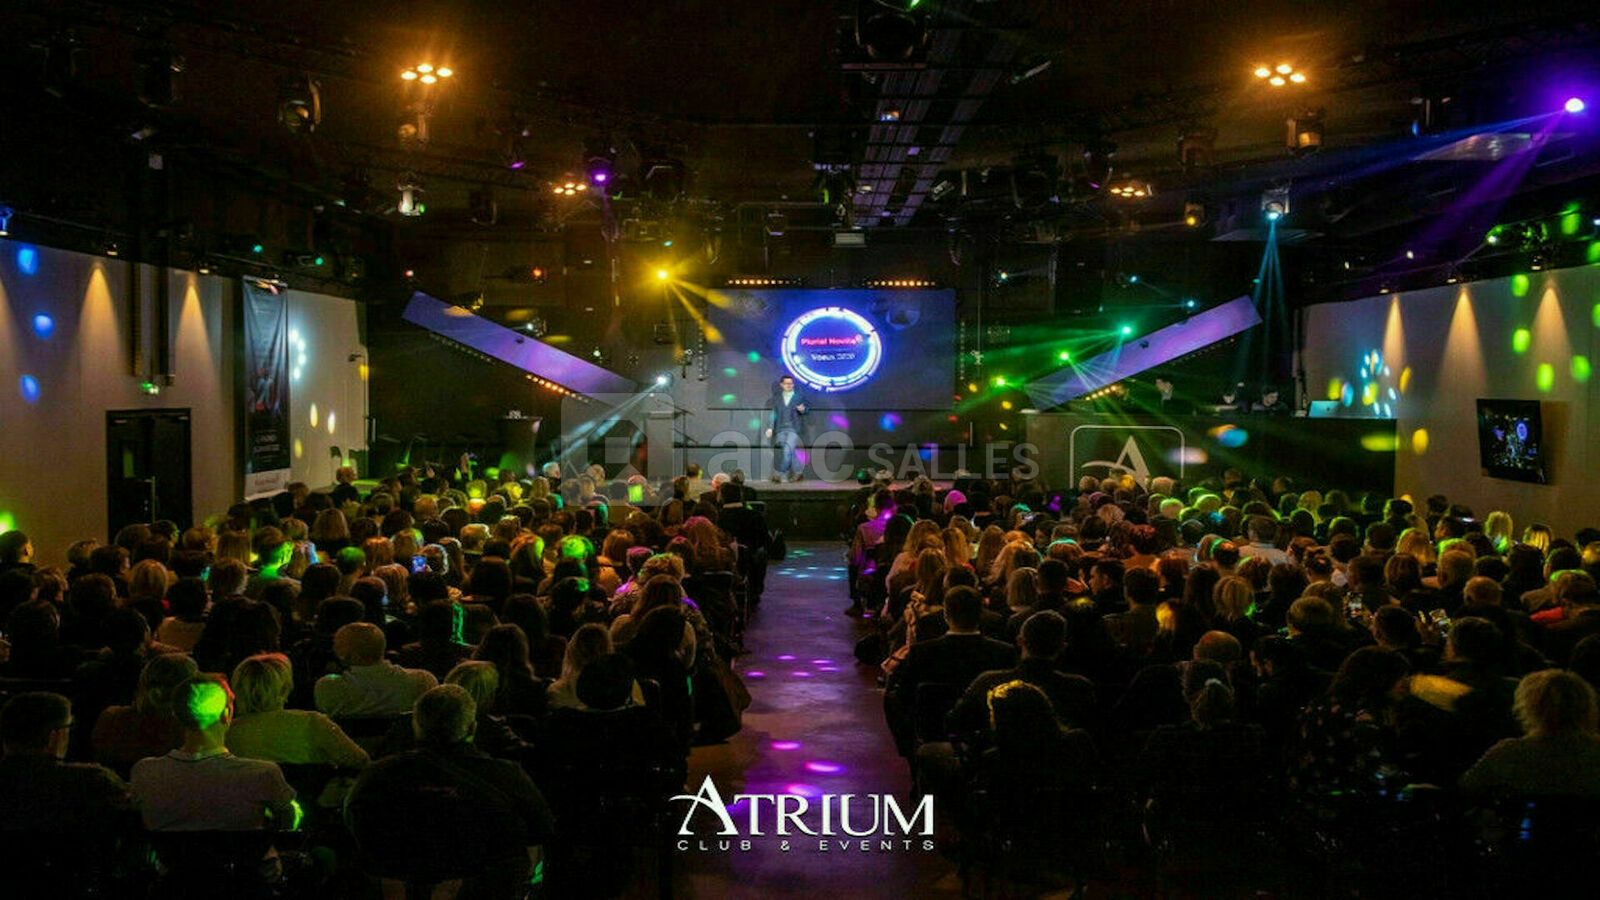 Atrium, Club, Events & Restaurant - ABC Salles